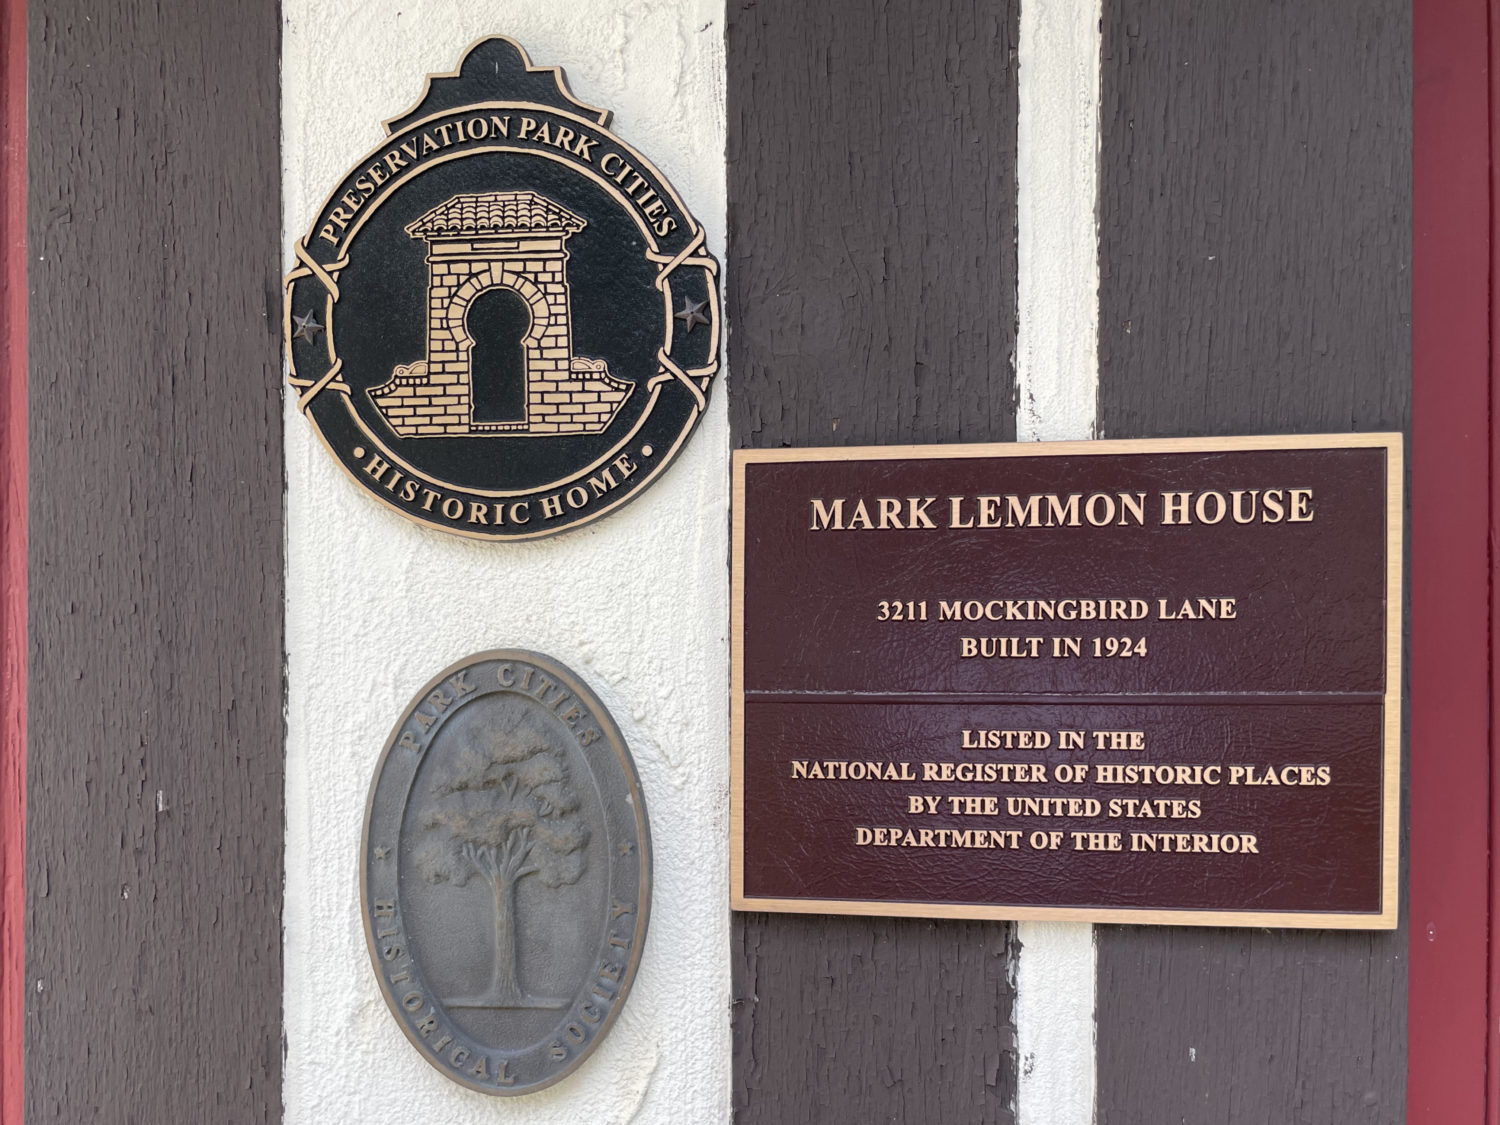 Preservation plaques celebrate Highland Park home designed by Mark Lemmon.